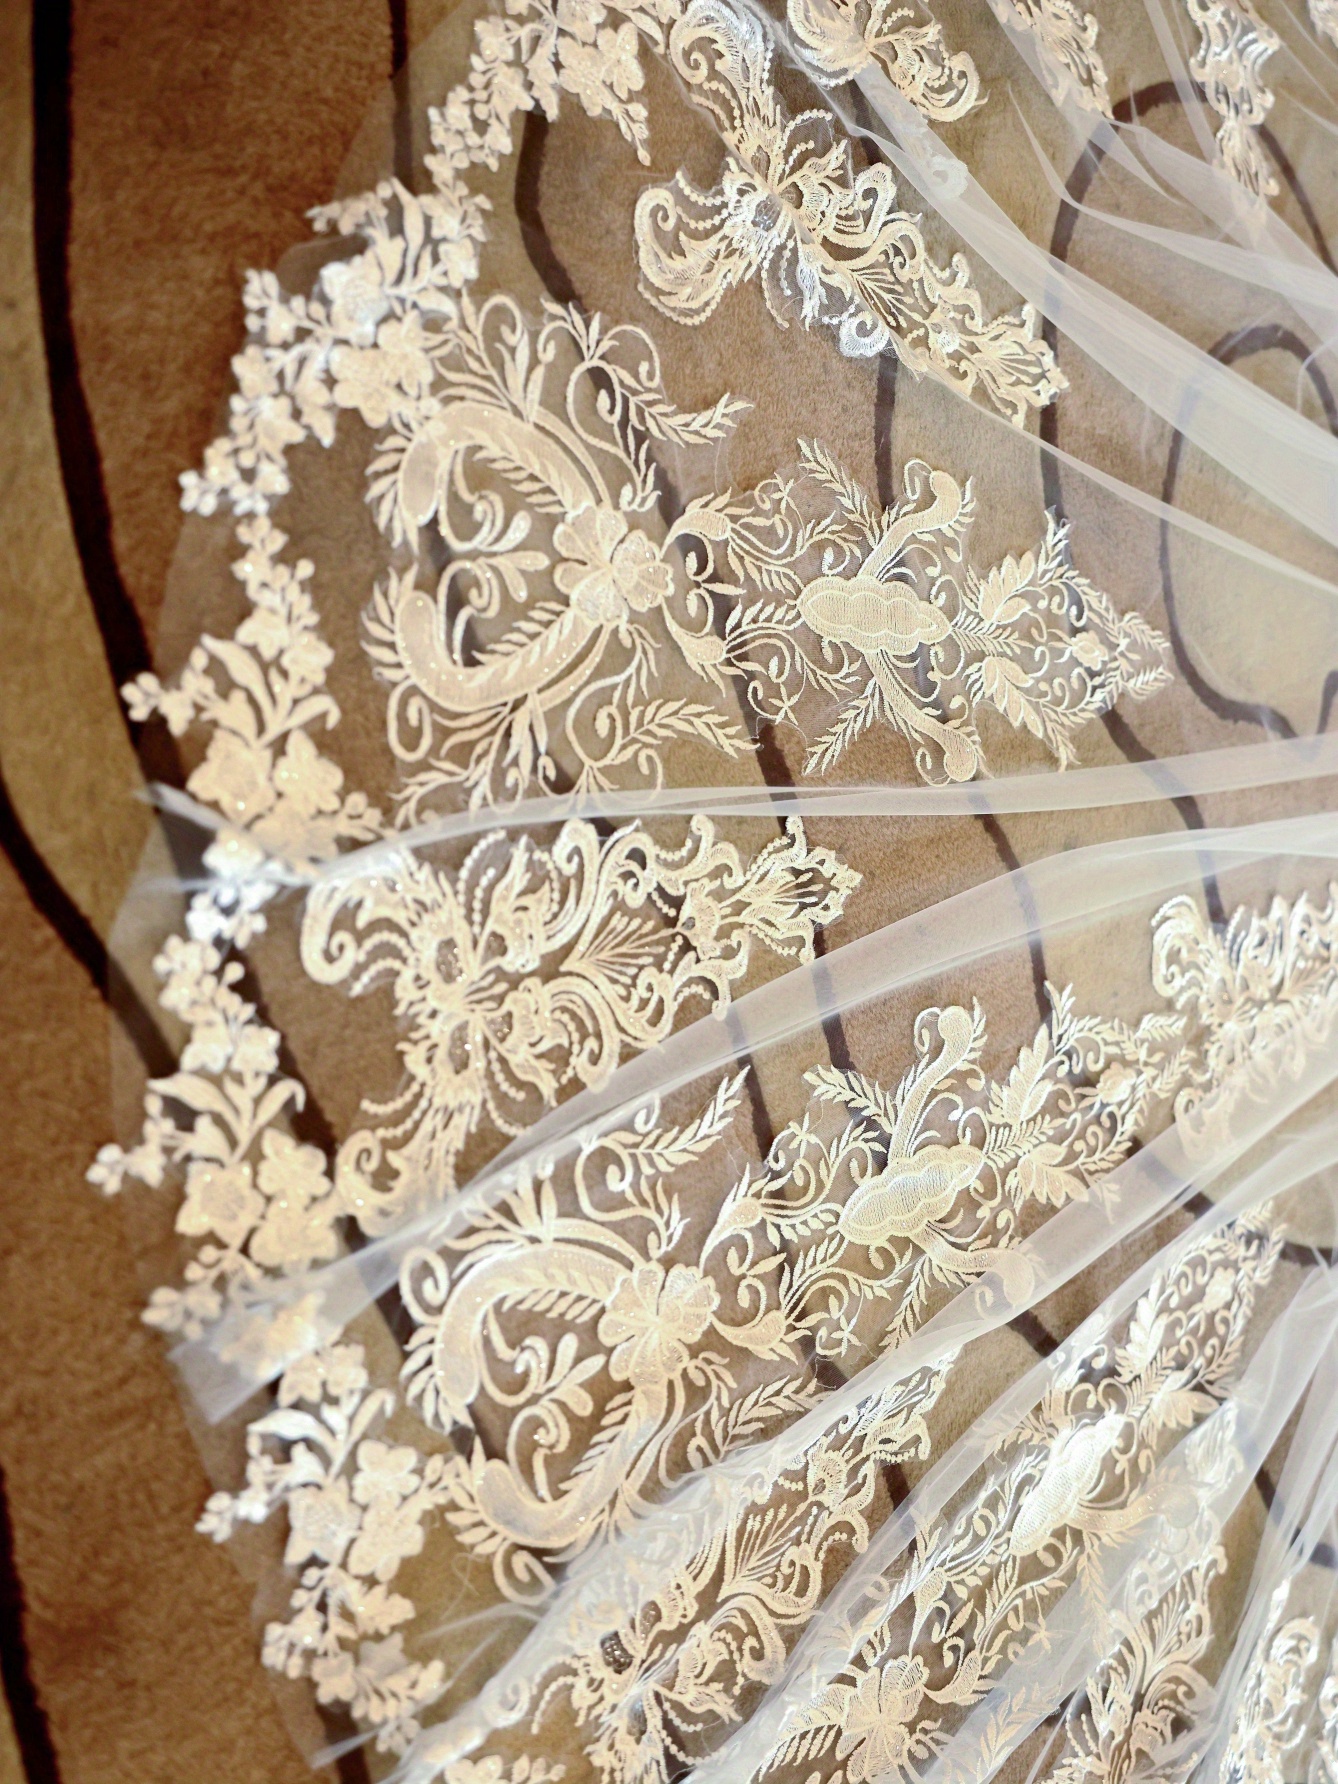  SHOYY Velo de novia 9.8 ft de encaje blanco y dorado con  cuentas brillantes Purfle largo catedral velos de boda elegante Mariage 9.8  ft diadema (color marfil, longitud del artículo: 78.7